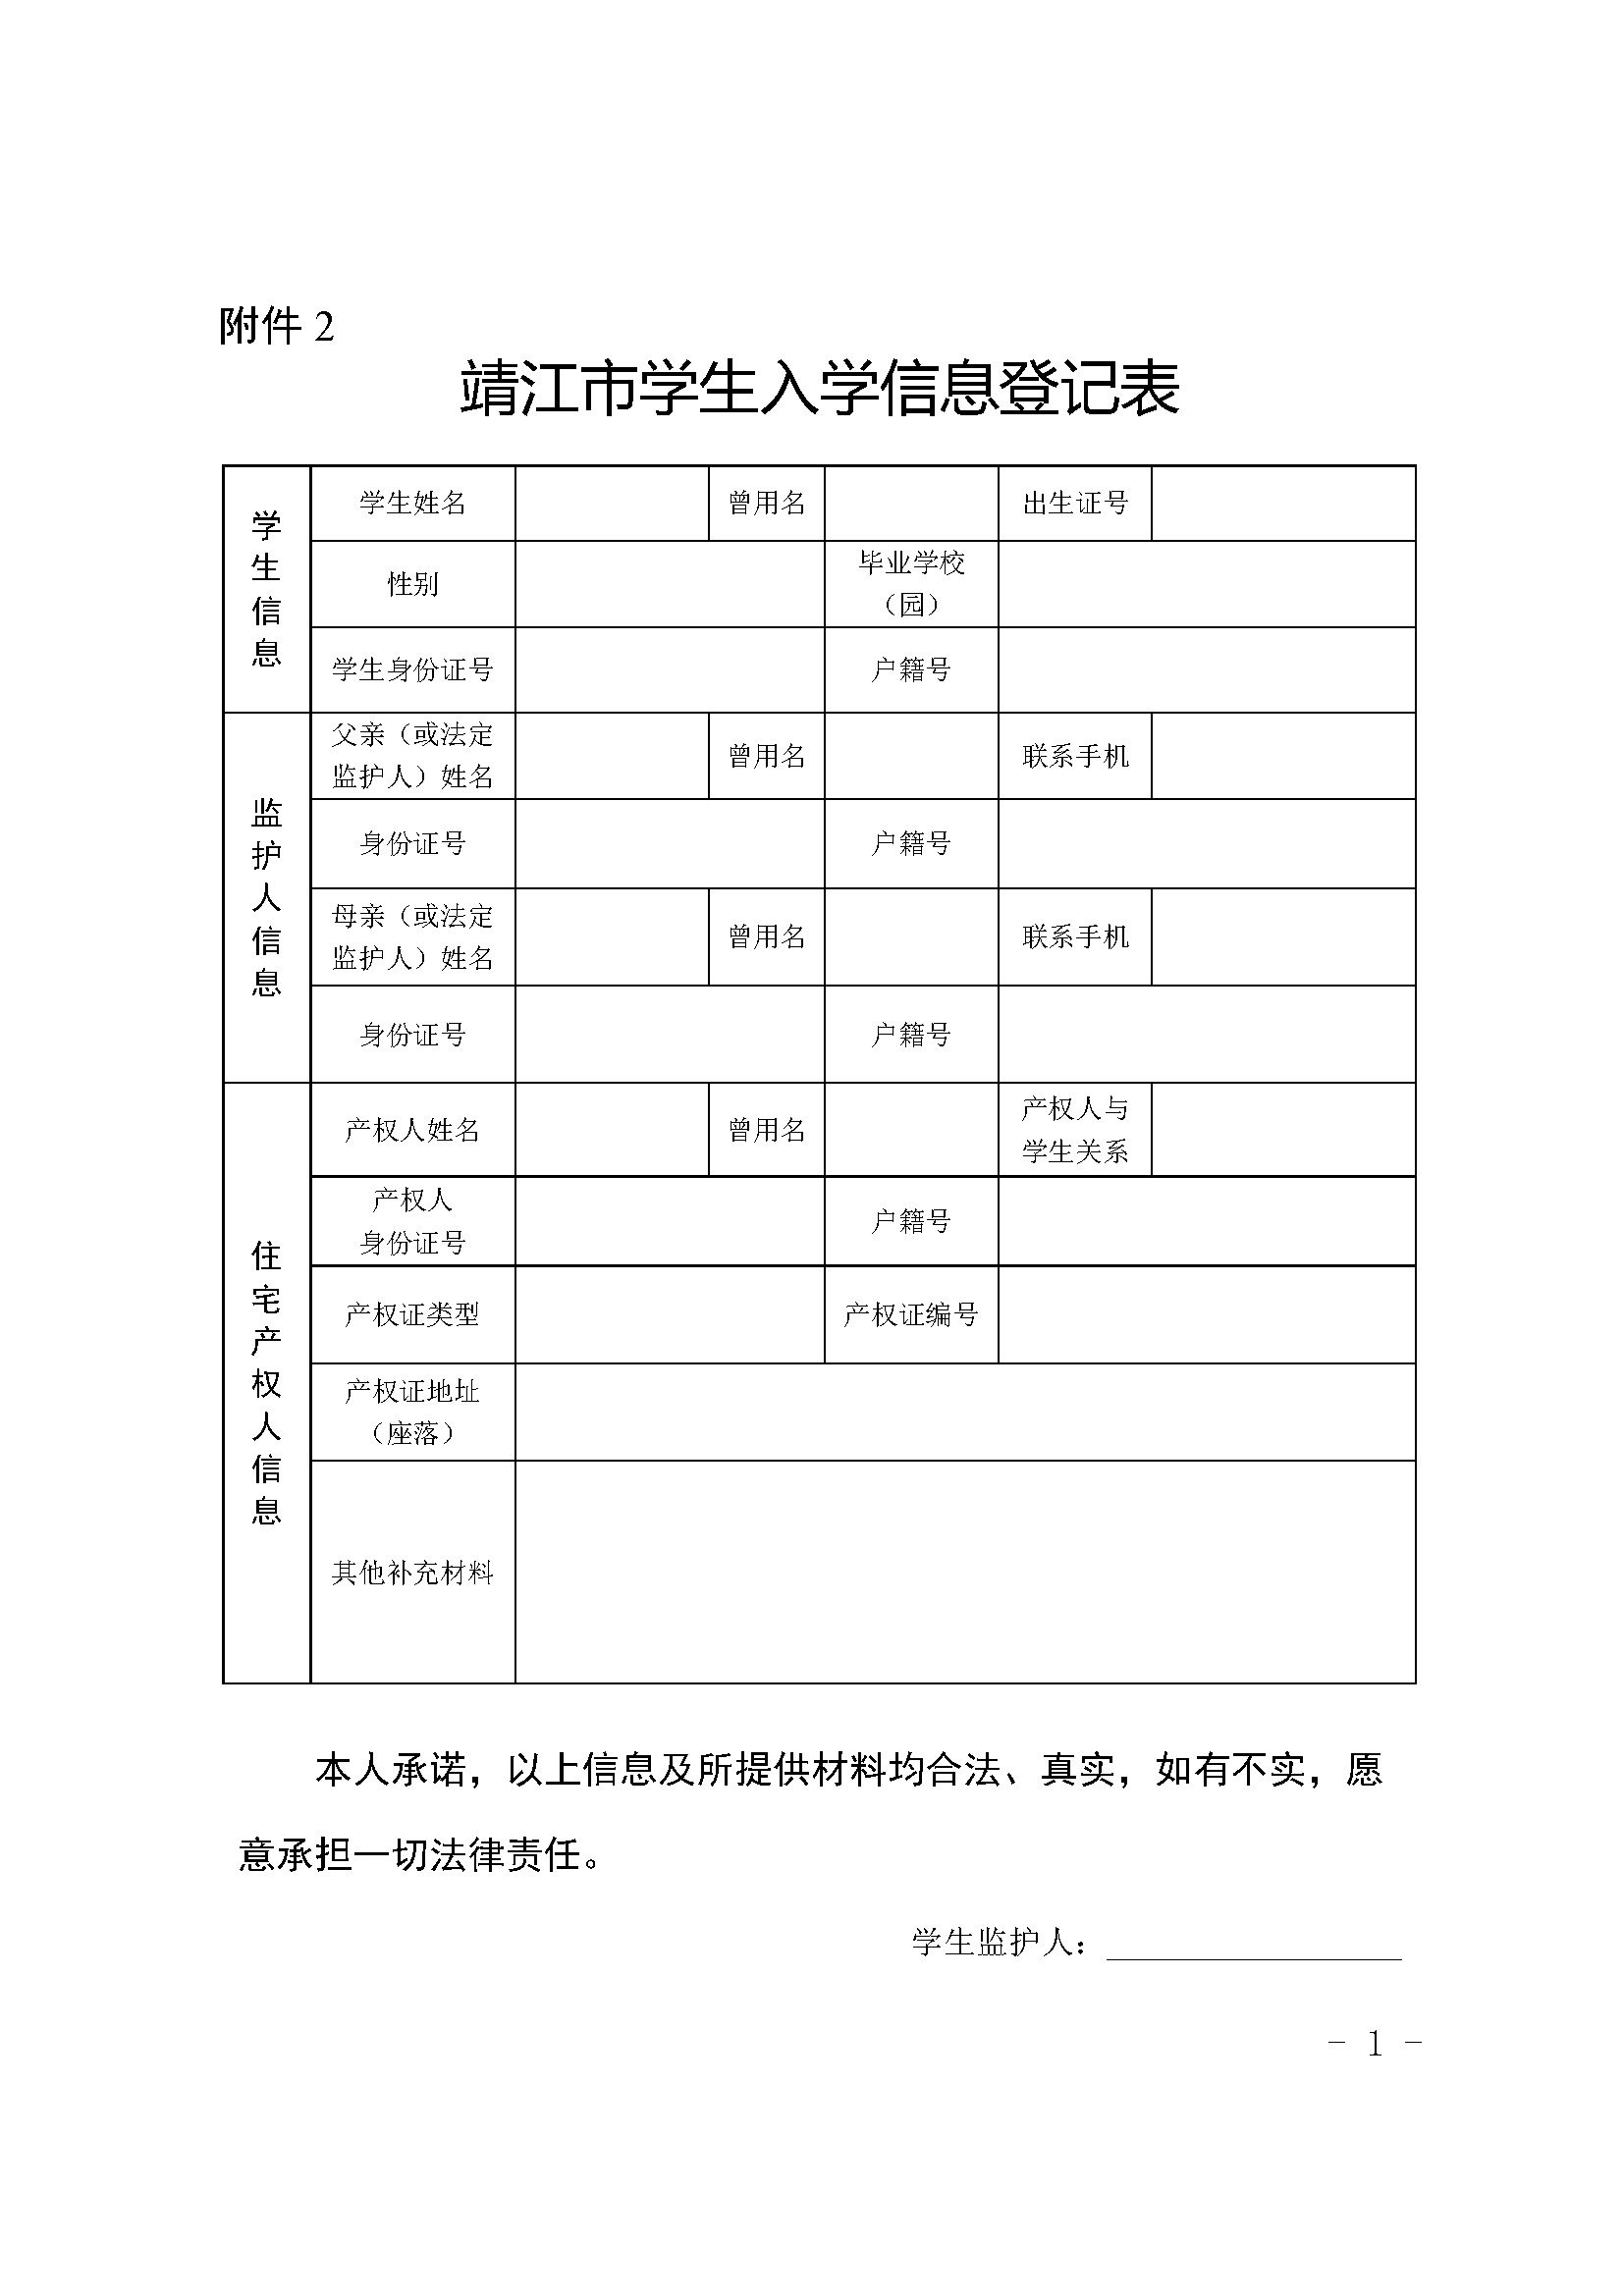 附件2 靖江市学生入学信息登记表_页面_1.jpg